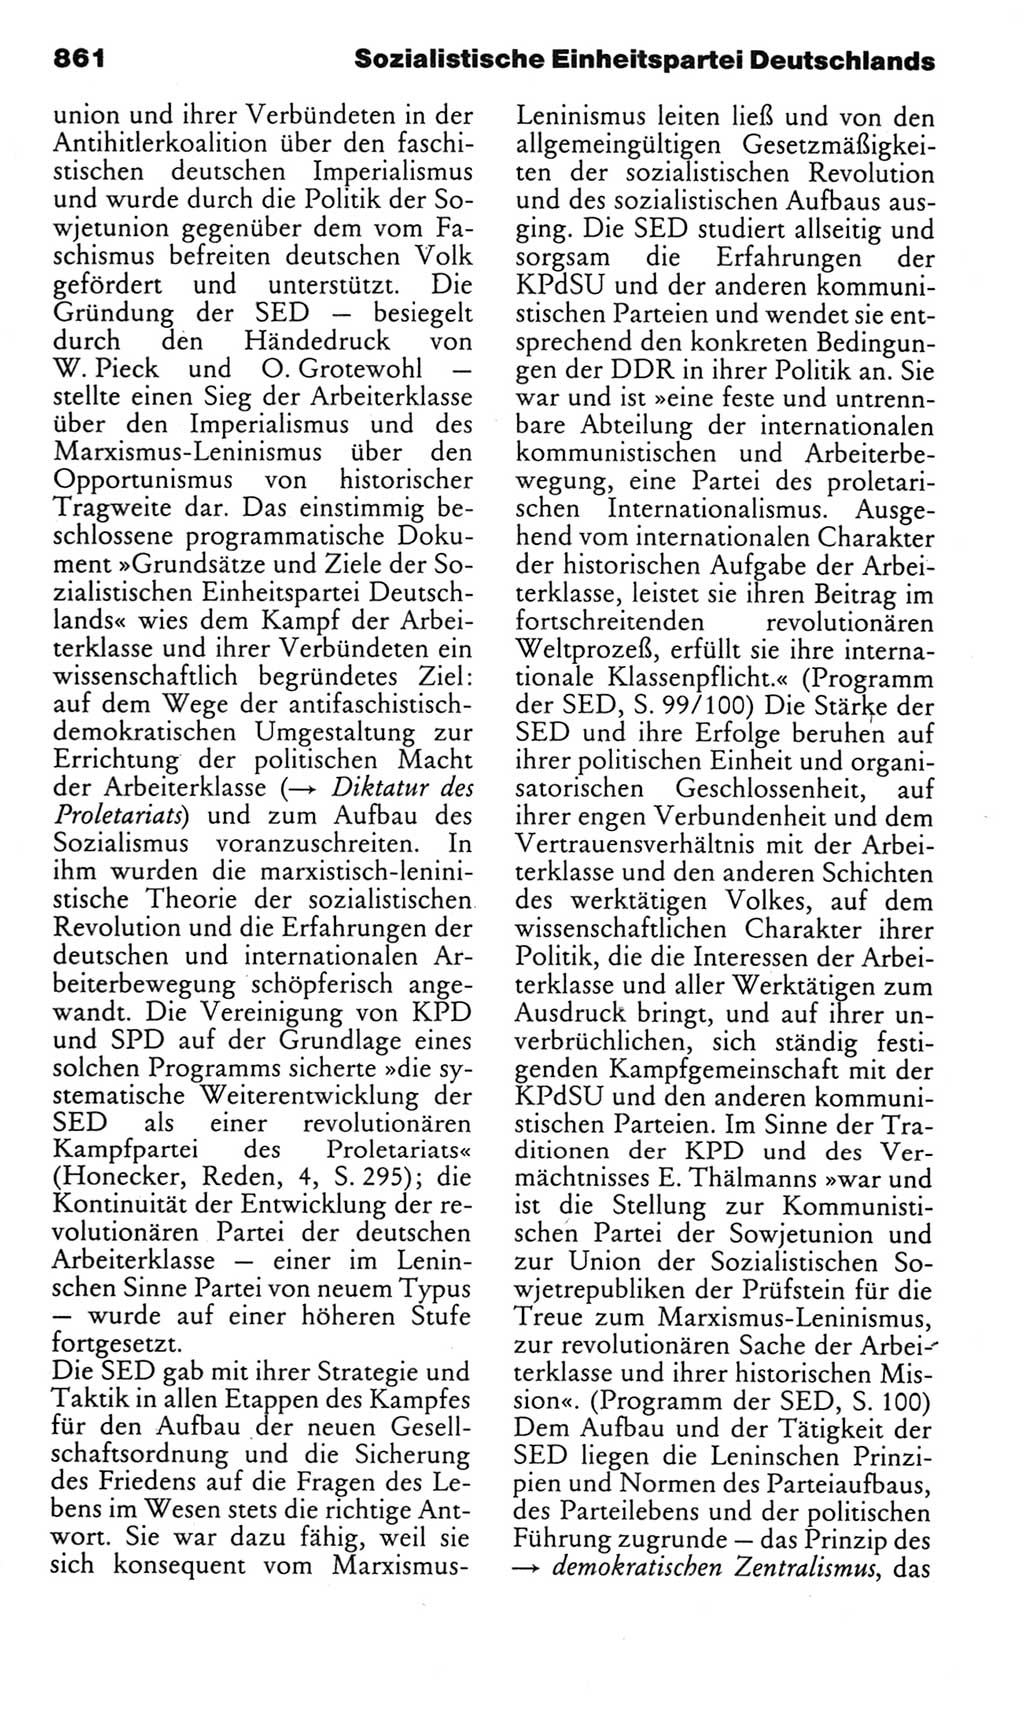 Kleines politisches Wörterbuch [Deutsche Demokratische Republik (DDR)] 1985, Seite 861 (Kl. pol. Wb. DDR 1985, S. 861)